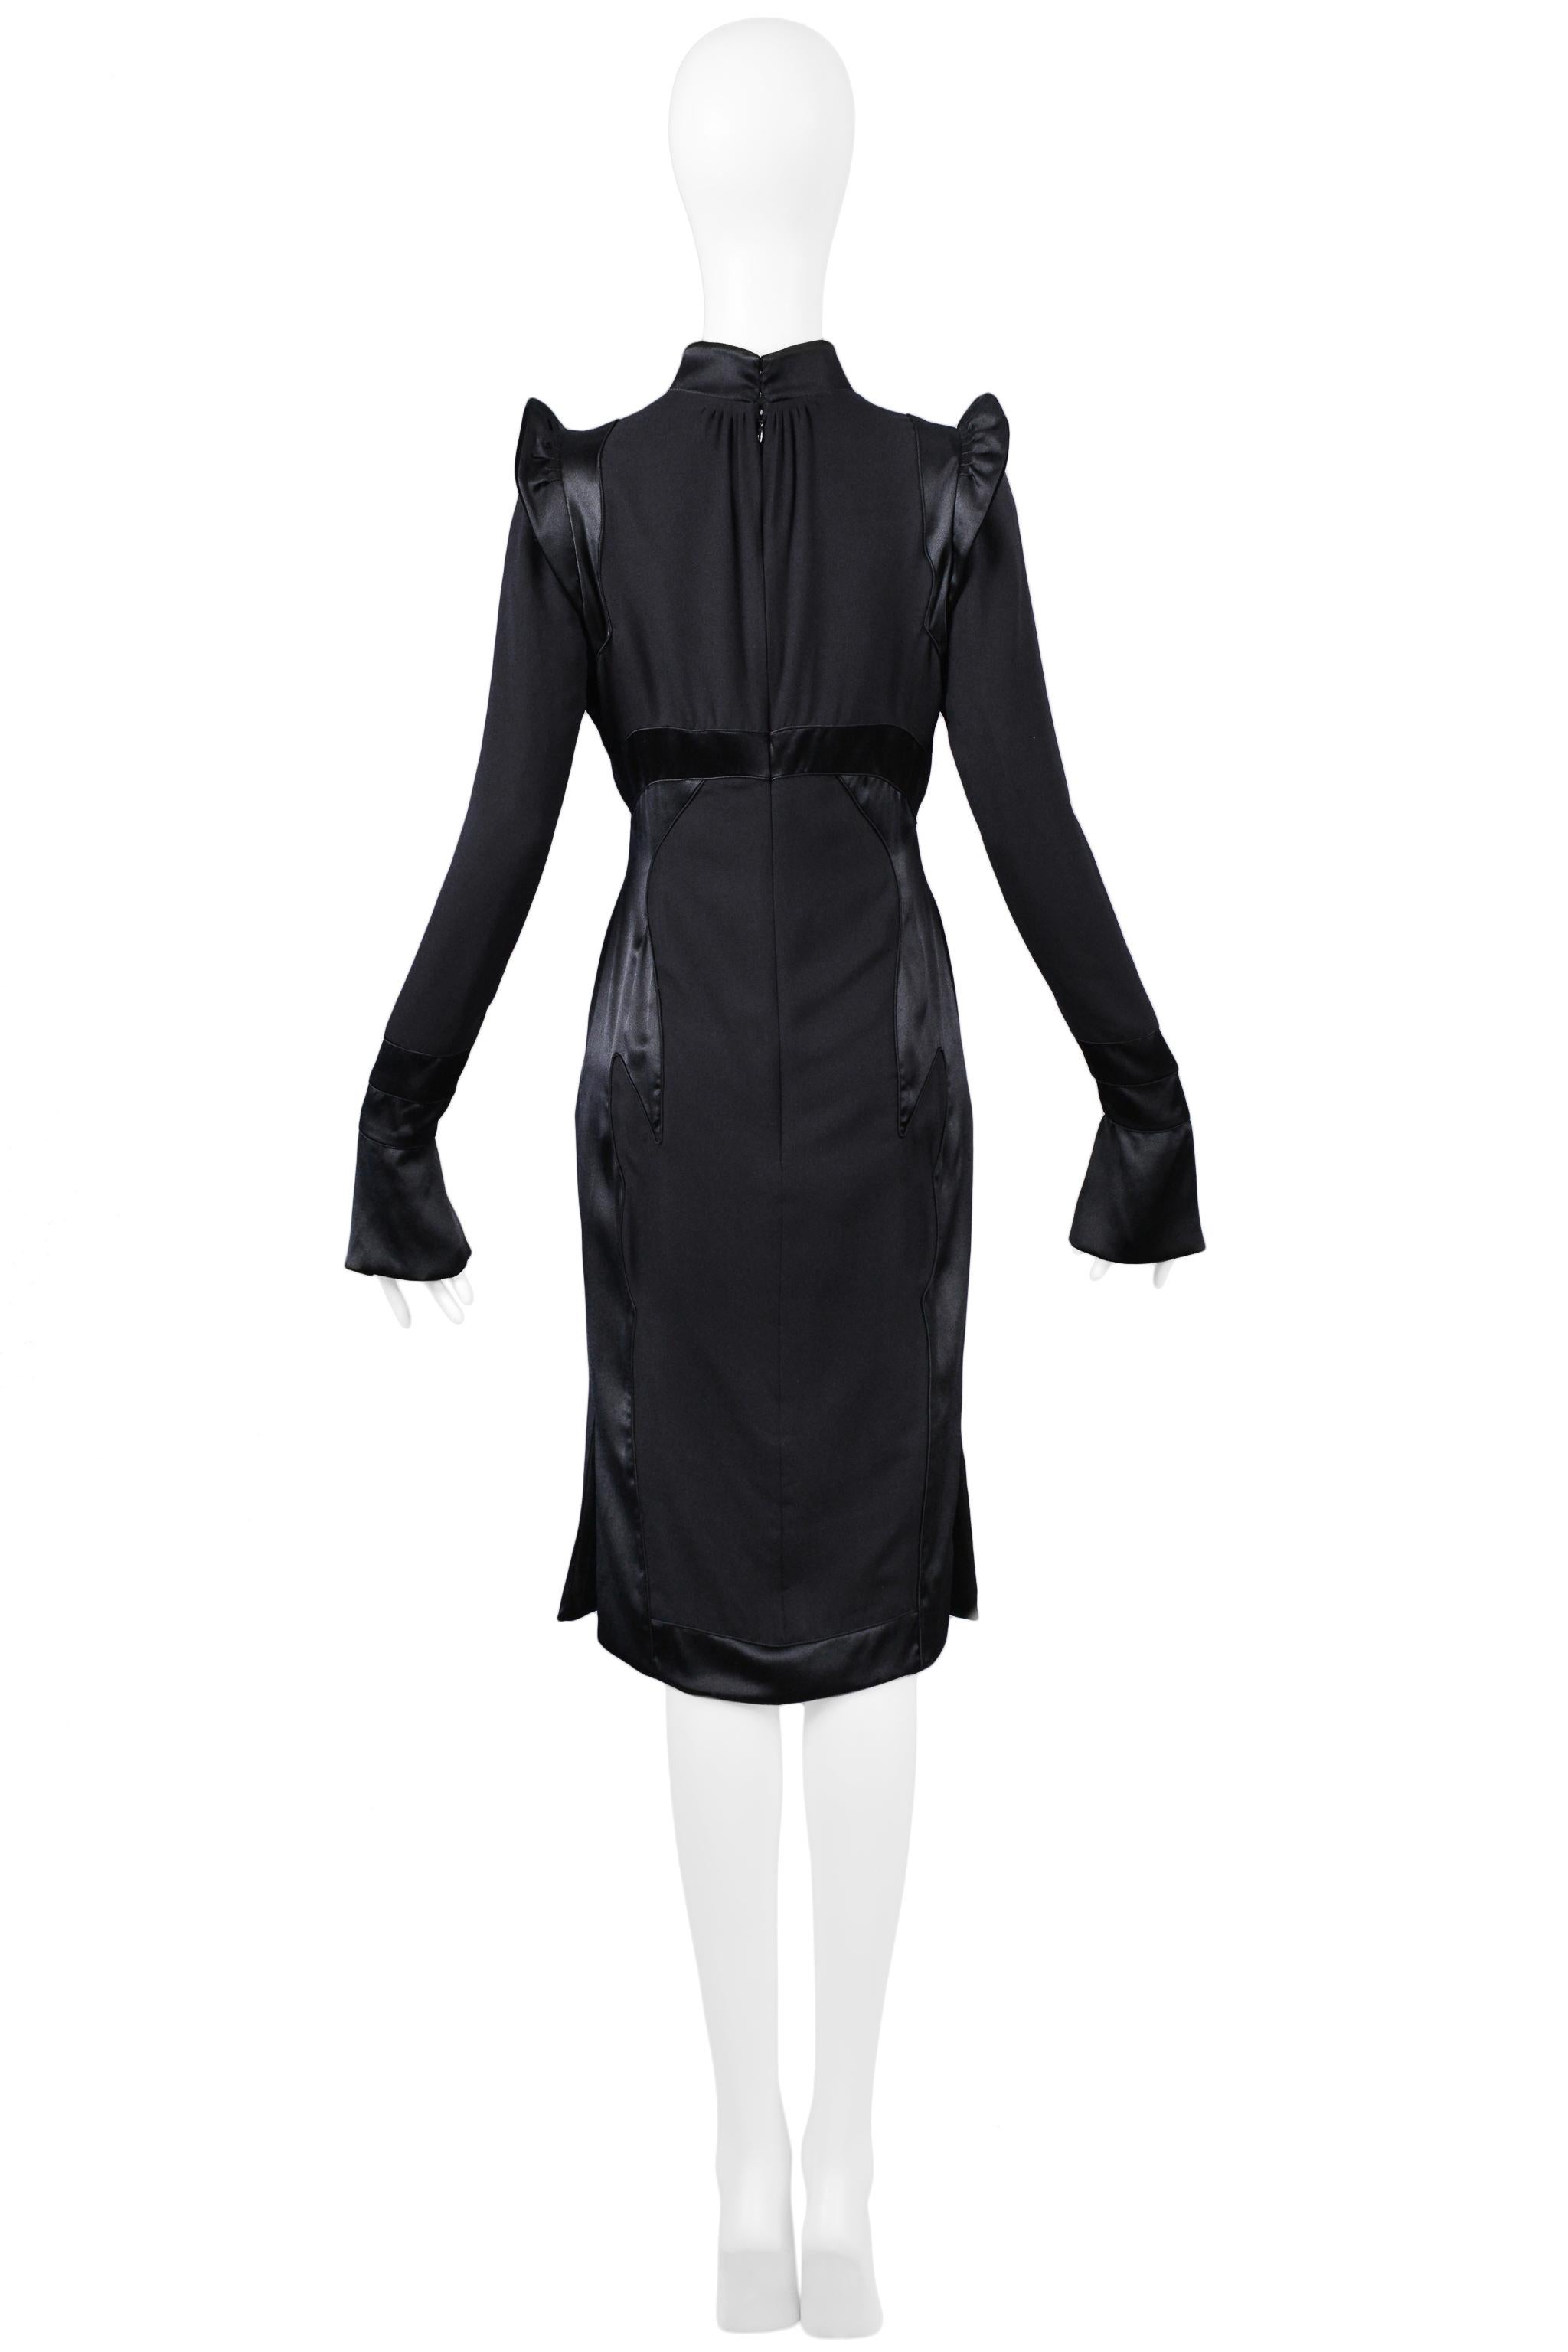 Tom Ford for Yves Saint Laurent Black Silk Dress 2004 For Sale 1